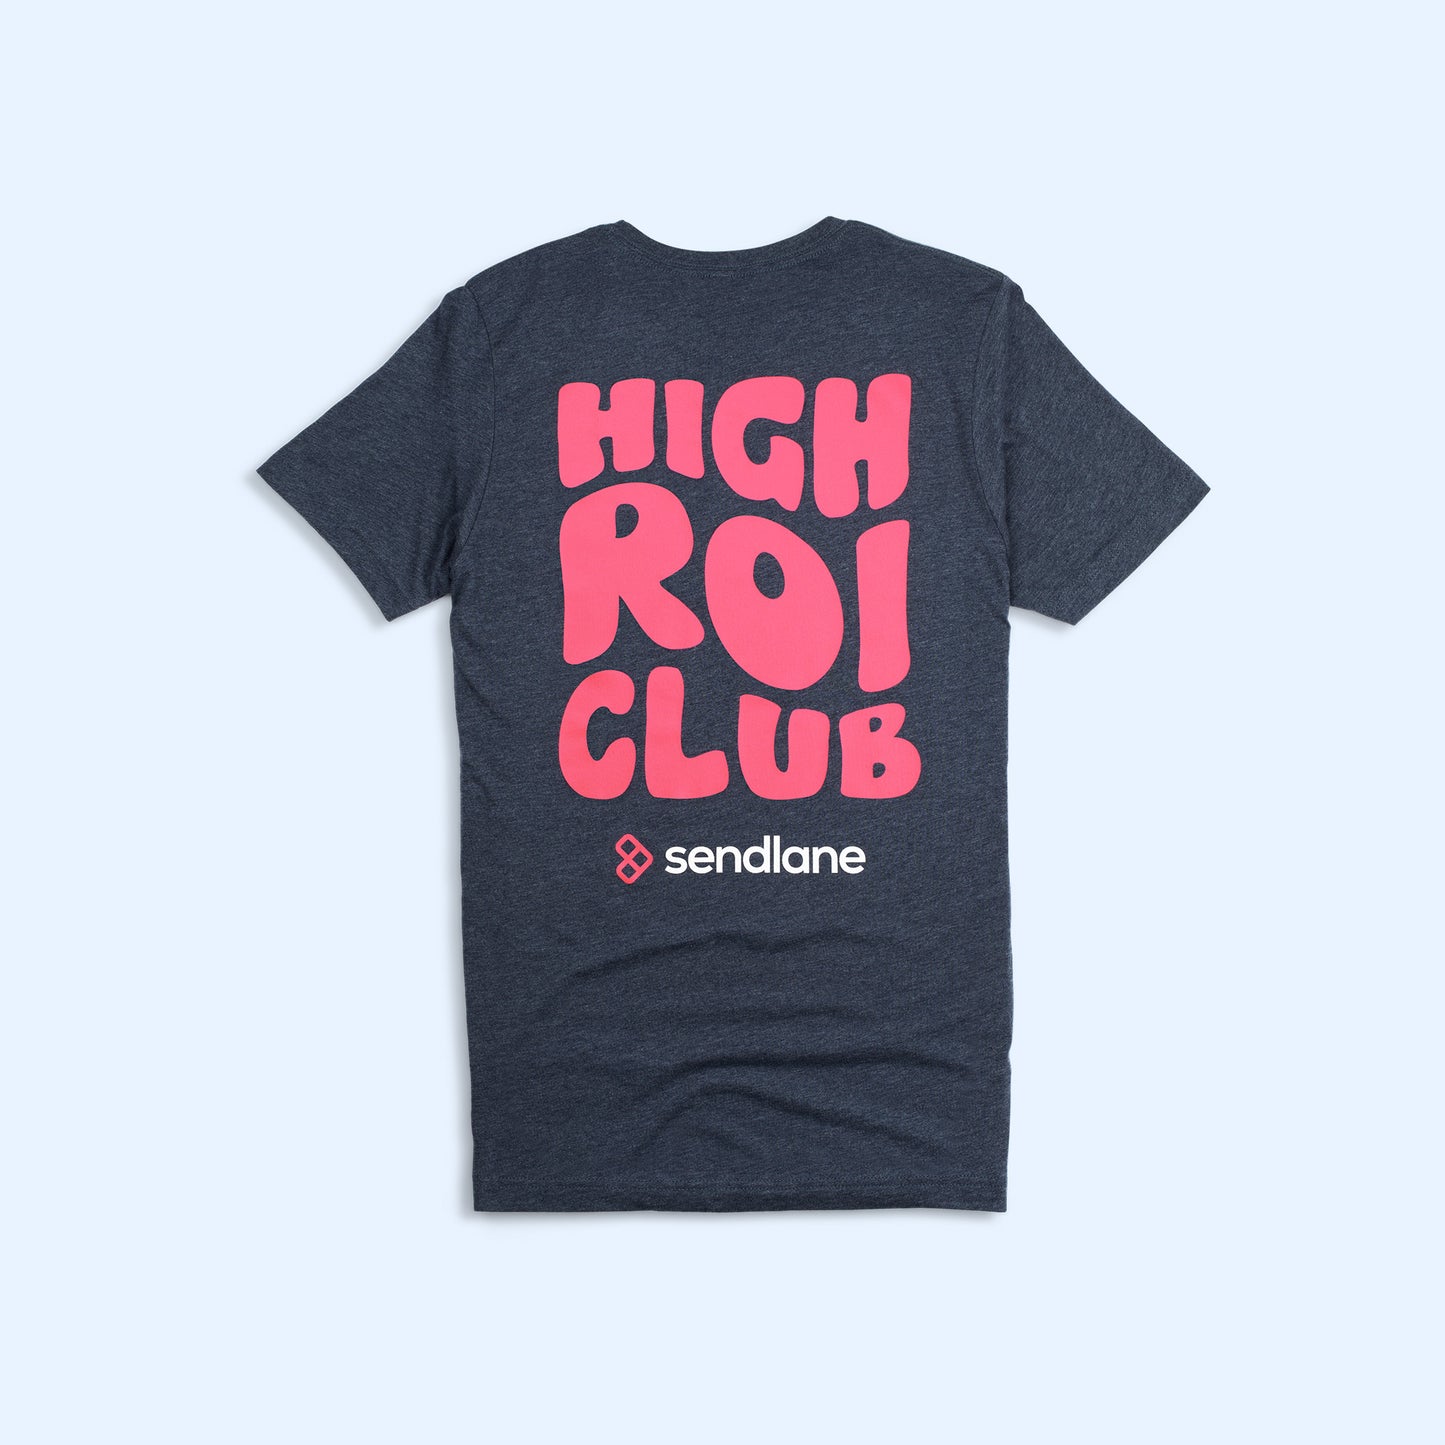 High ROI Club T-Shirt